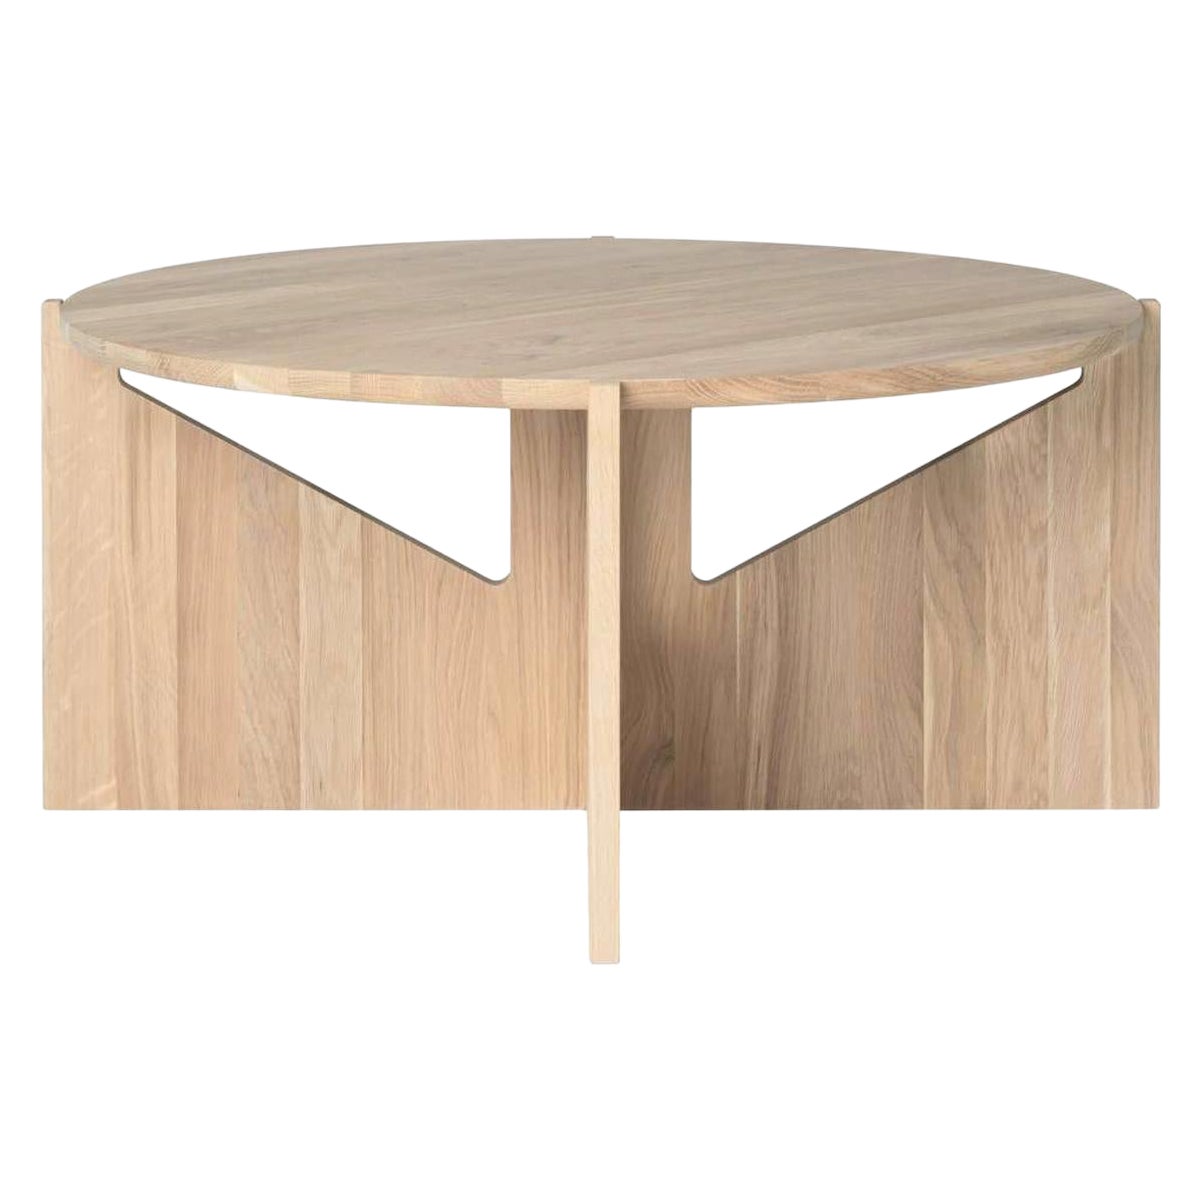 XL Oak Table by Kristina Dam Studio